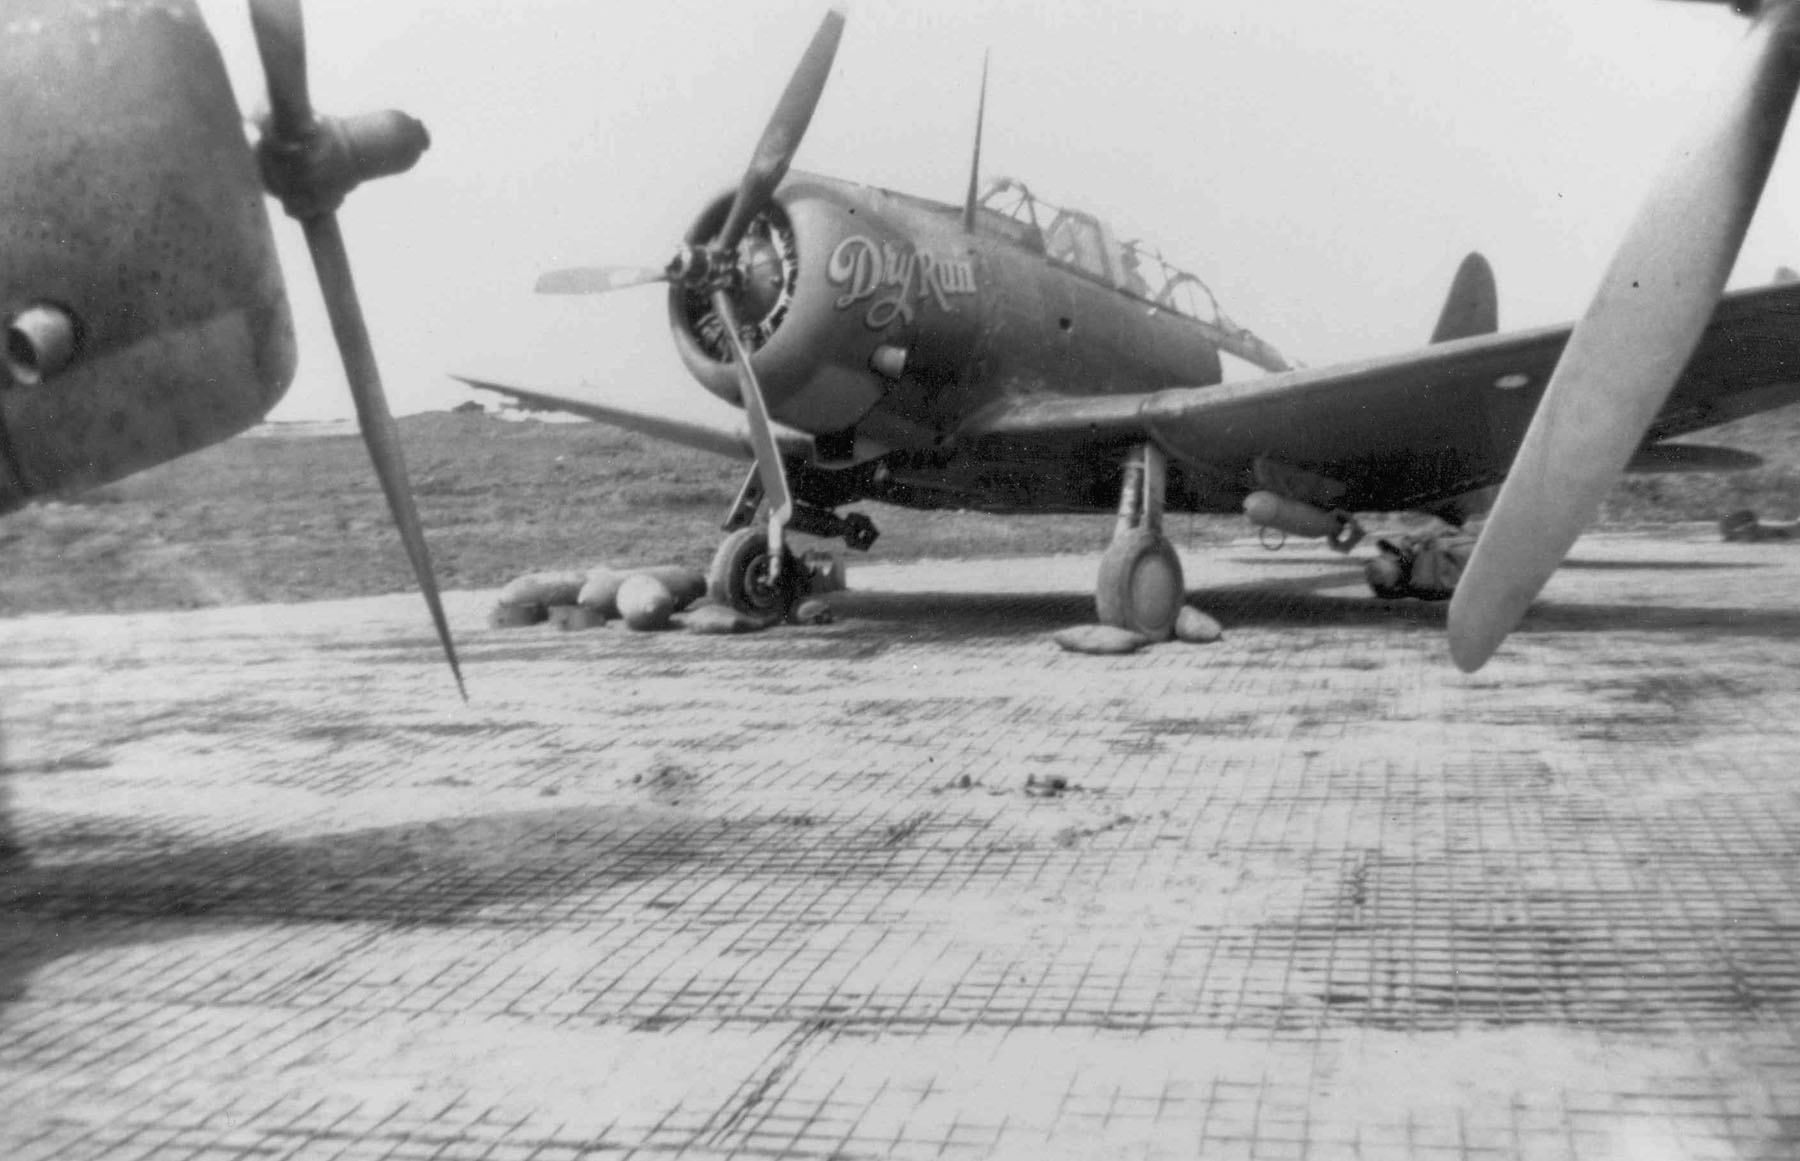 A-24B Banshee aircraft 'Dry Run' at rest at a Pacific base, 1943-45